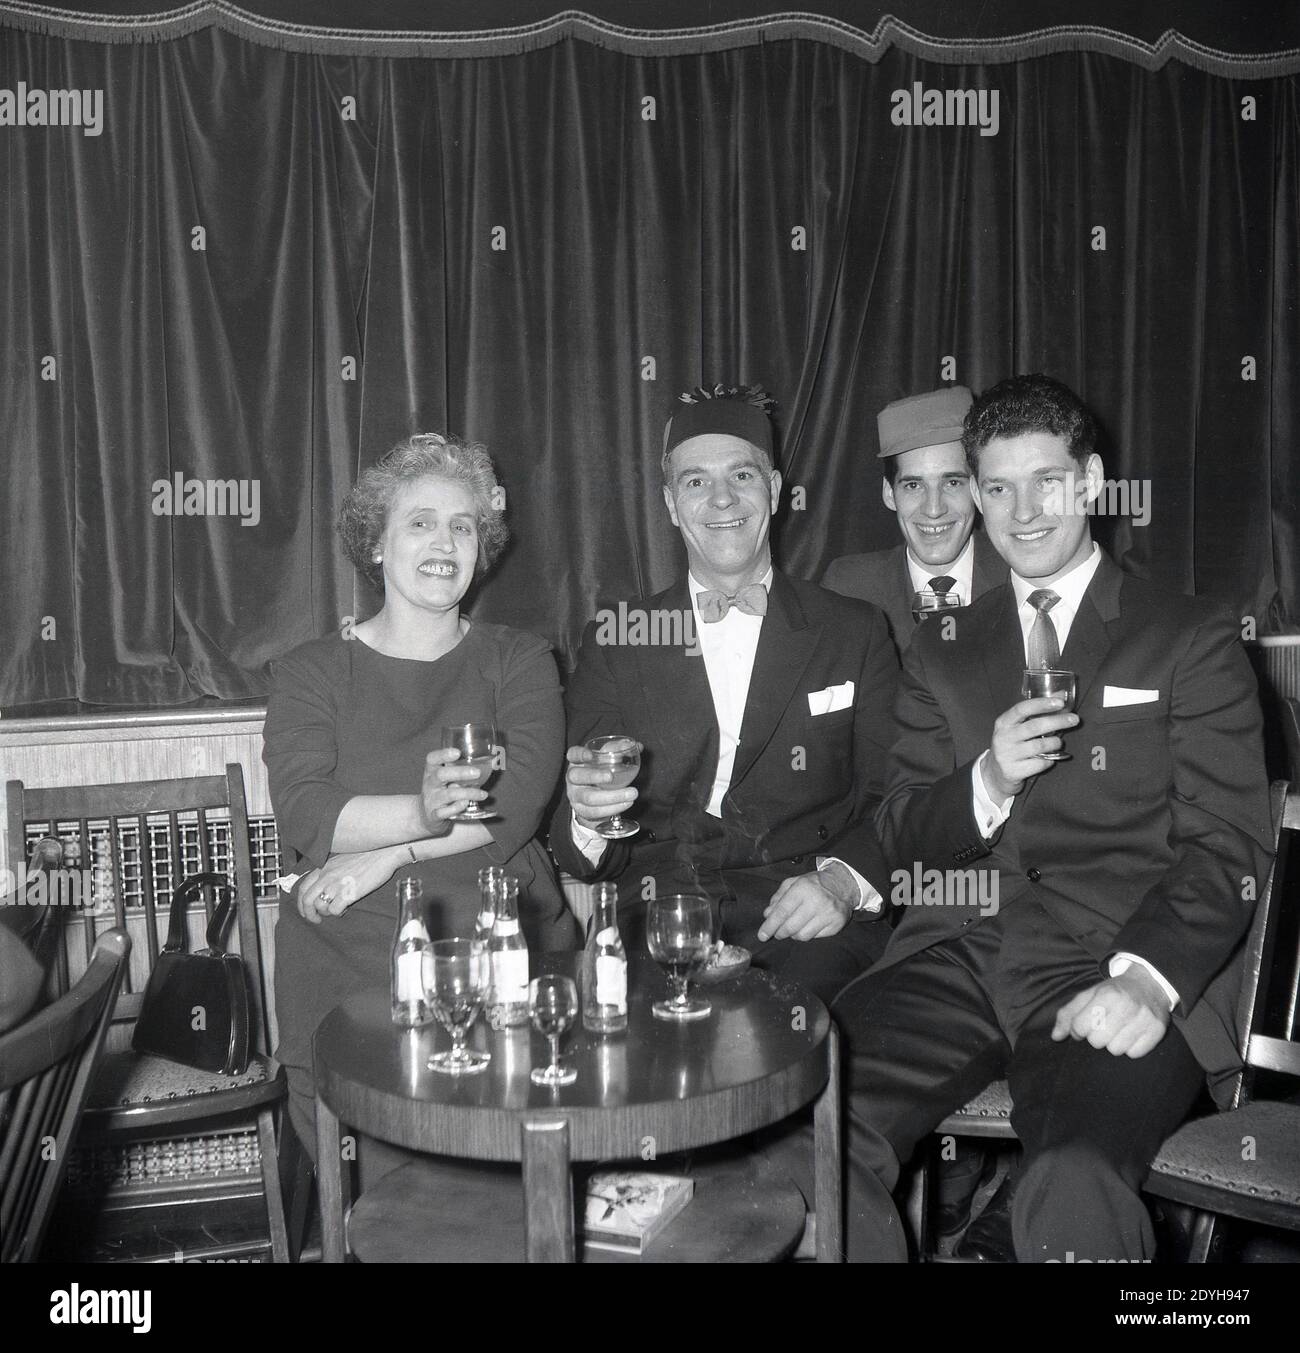 1950er Jahre, historisch, bei einer abendlichen gesellschaftlichen Veranstaltung in einem Ballsaal, lächelt rundum, wie Mutter und Vater, zwei in Partyhüten zelerieren und heben ein Glas, sitzen mit ihren beiden Söhnen, England, Großbritannien, an einem kleinen Tisch. Stockfoto